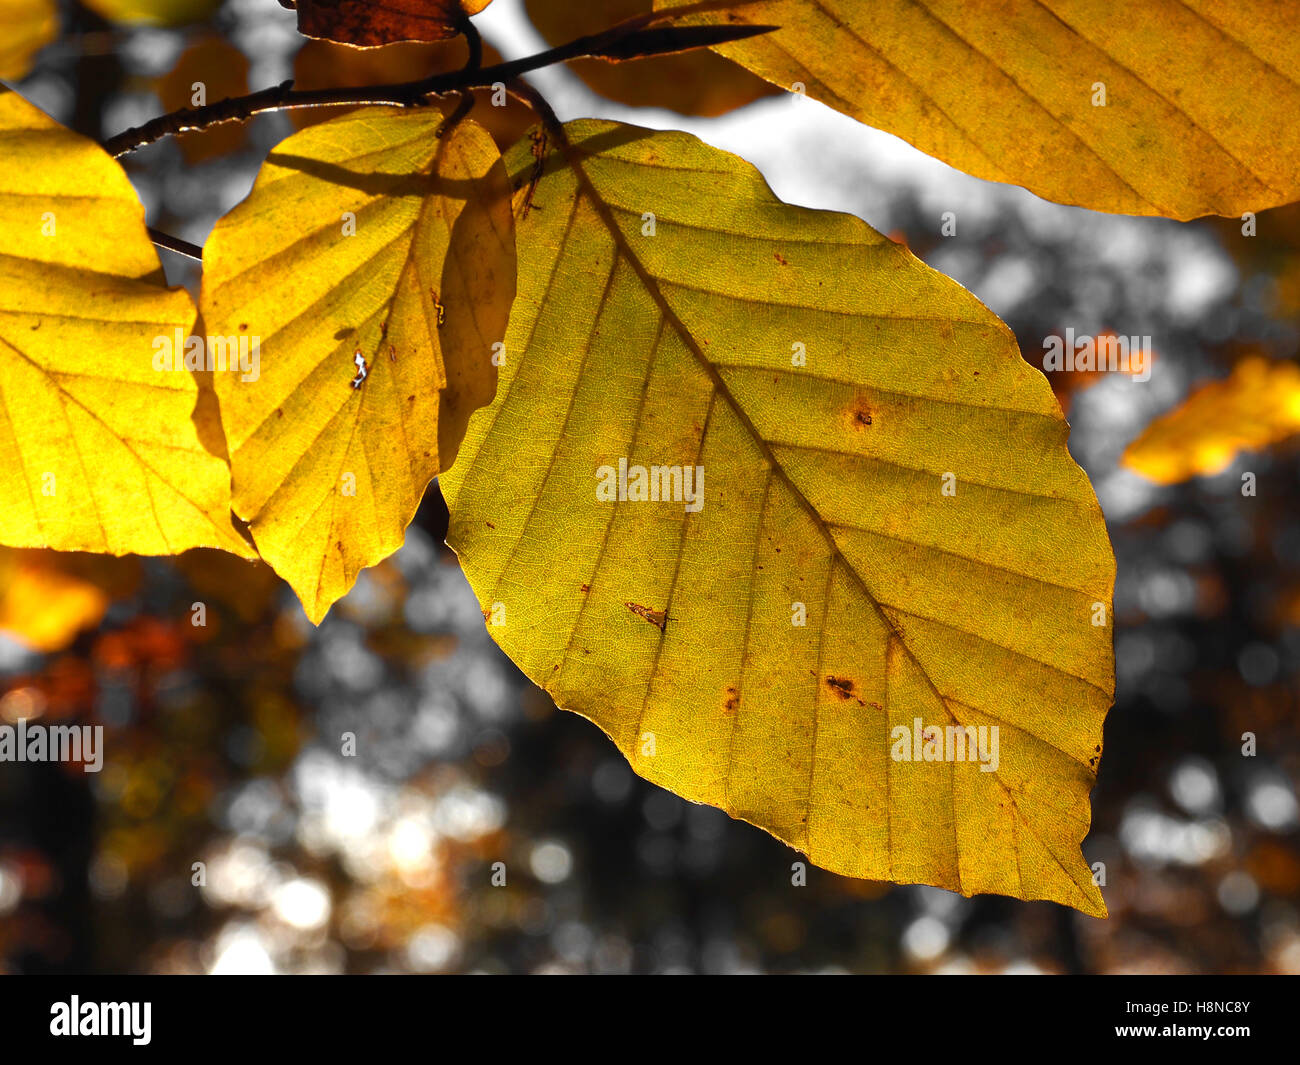 Couleurs d'automne lumineux d'un Beech tree leaf Banque D'Images